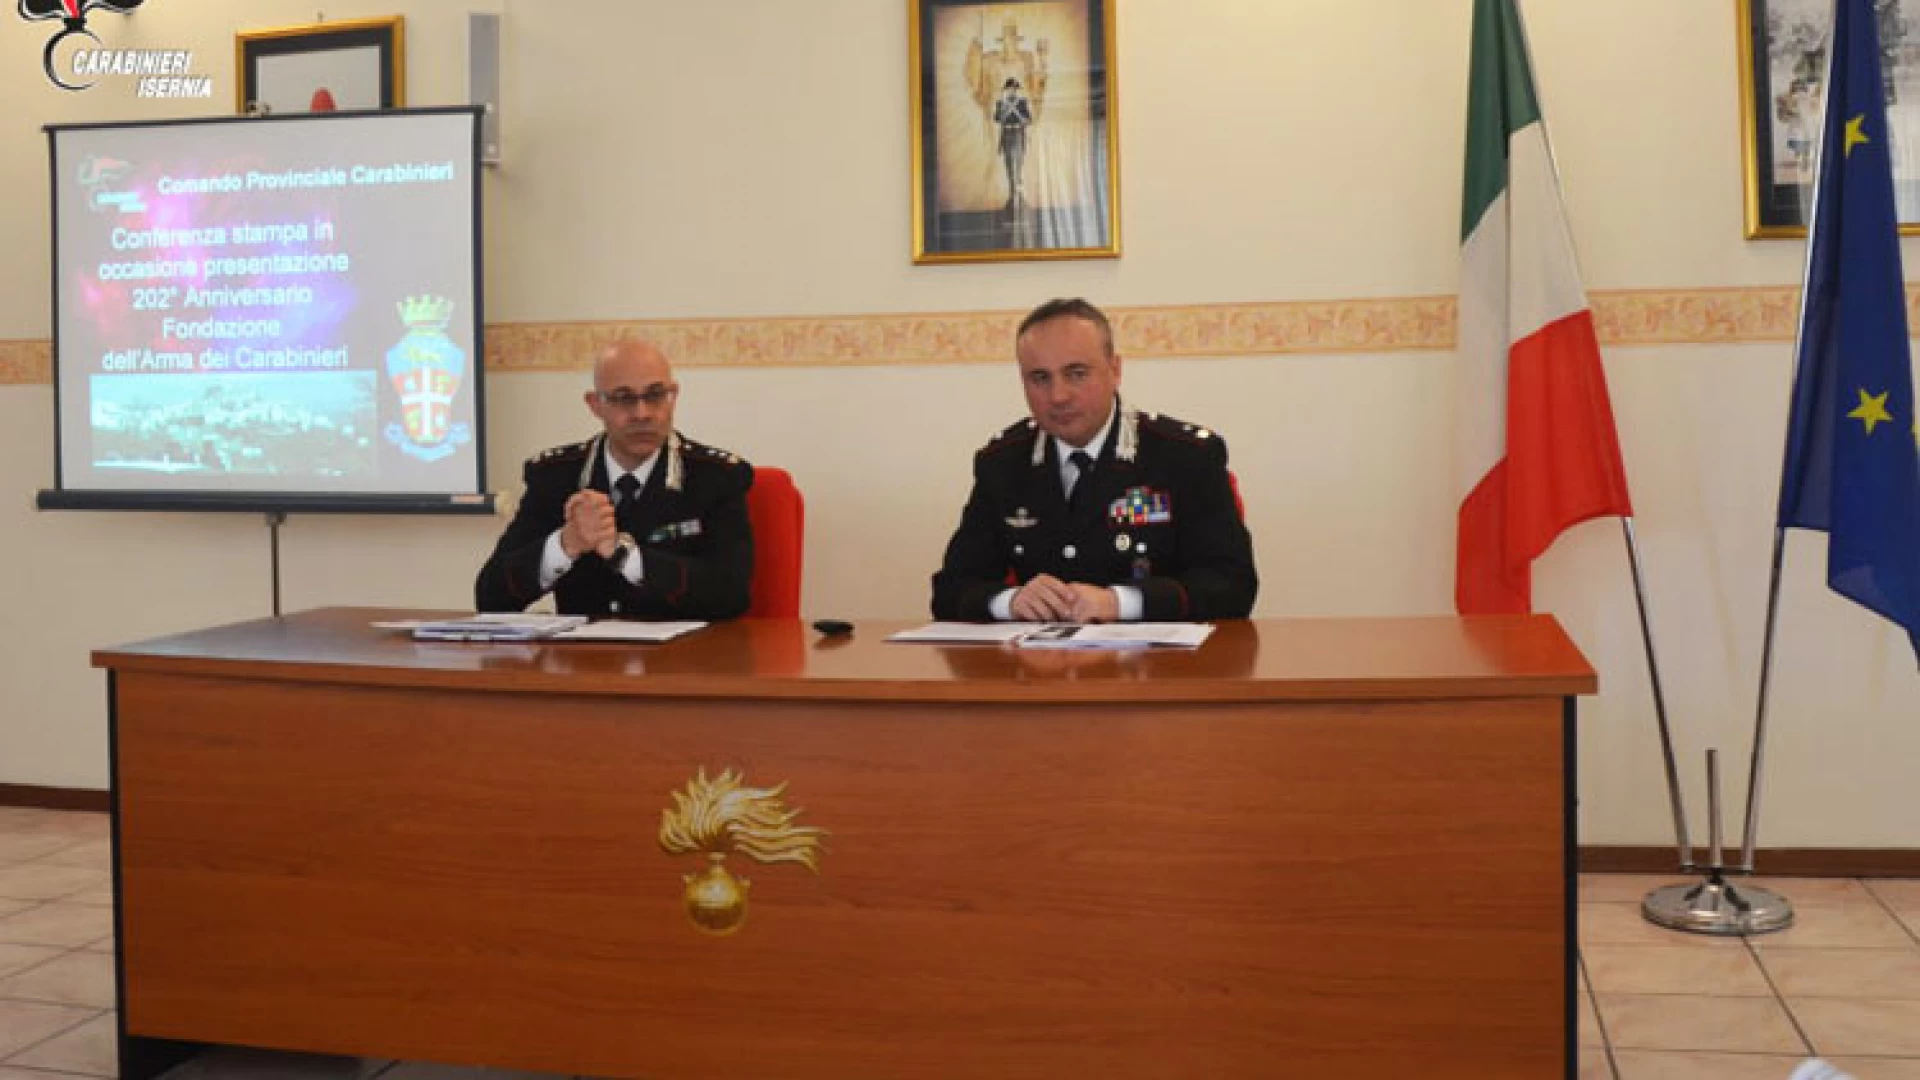 Isernia:  In occasione del prossimo anniversario della fondazione dell’Arma dei Carabinieri, il Comando Provinciale di Isernia traccia un bilancio delle attività operative condotte sul territorio.